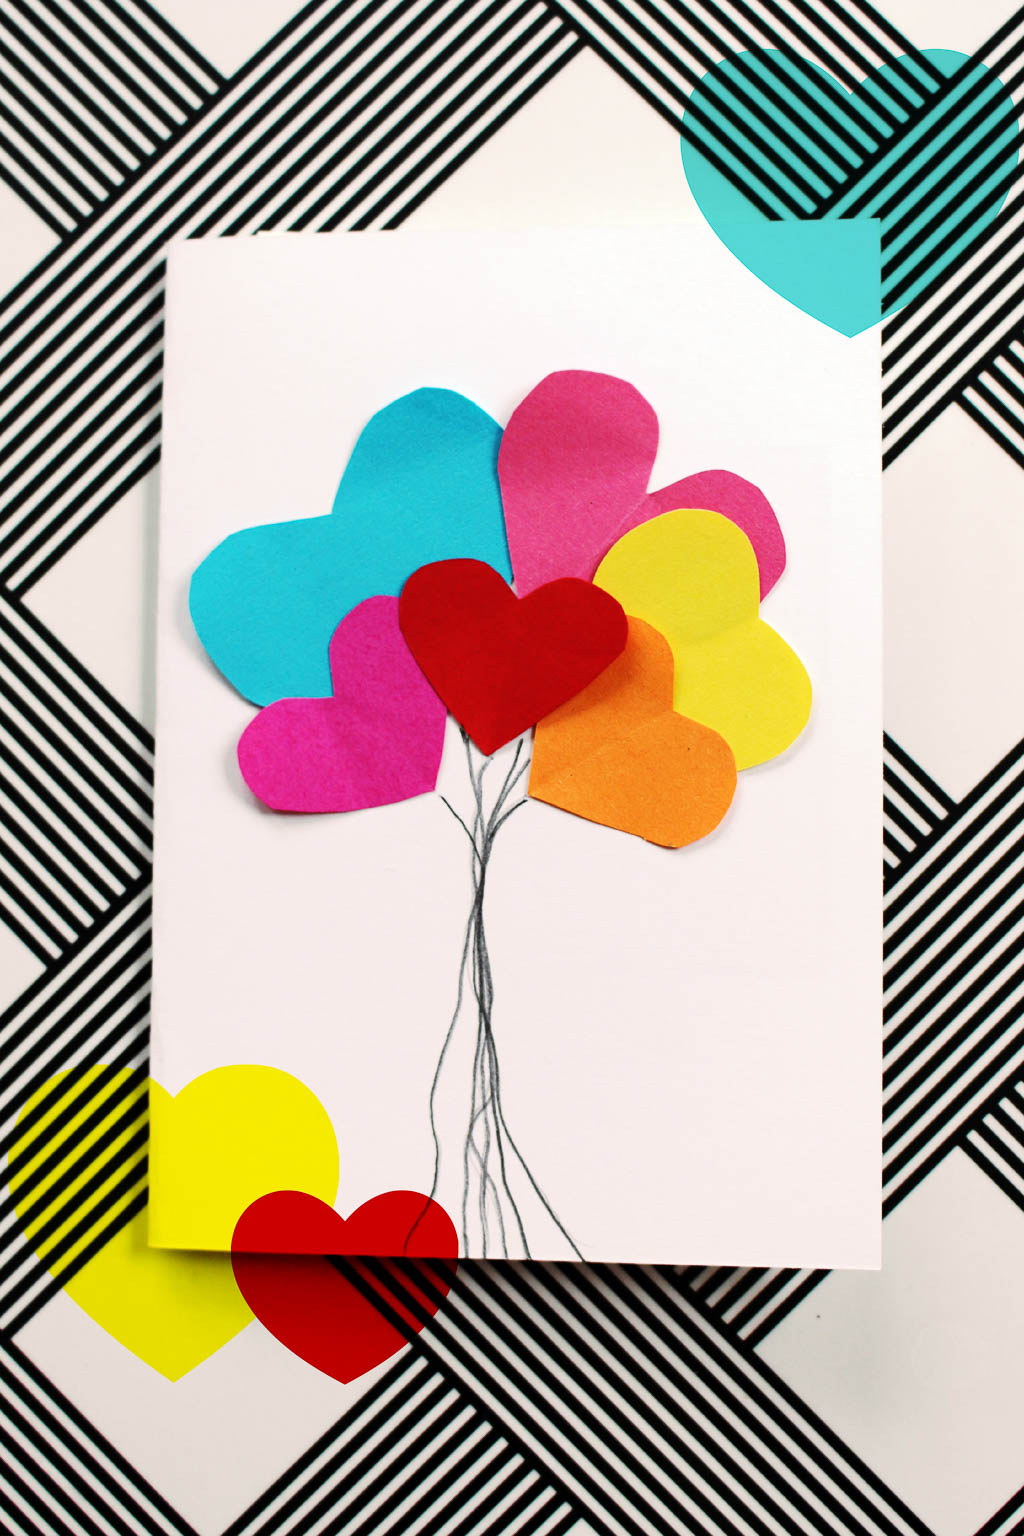 Bastelanleitung für einfache Valentinskarten für liebe Menschen